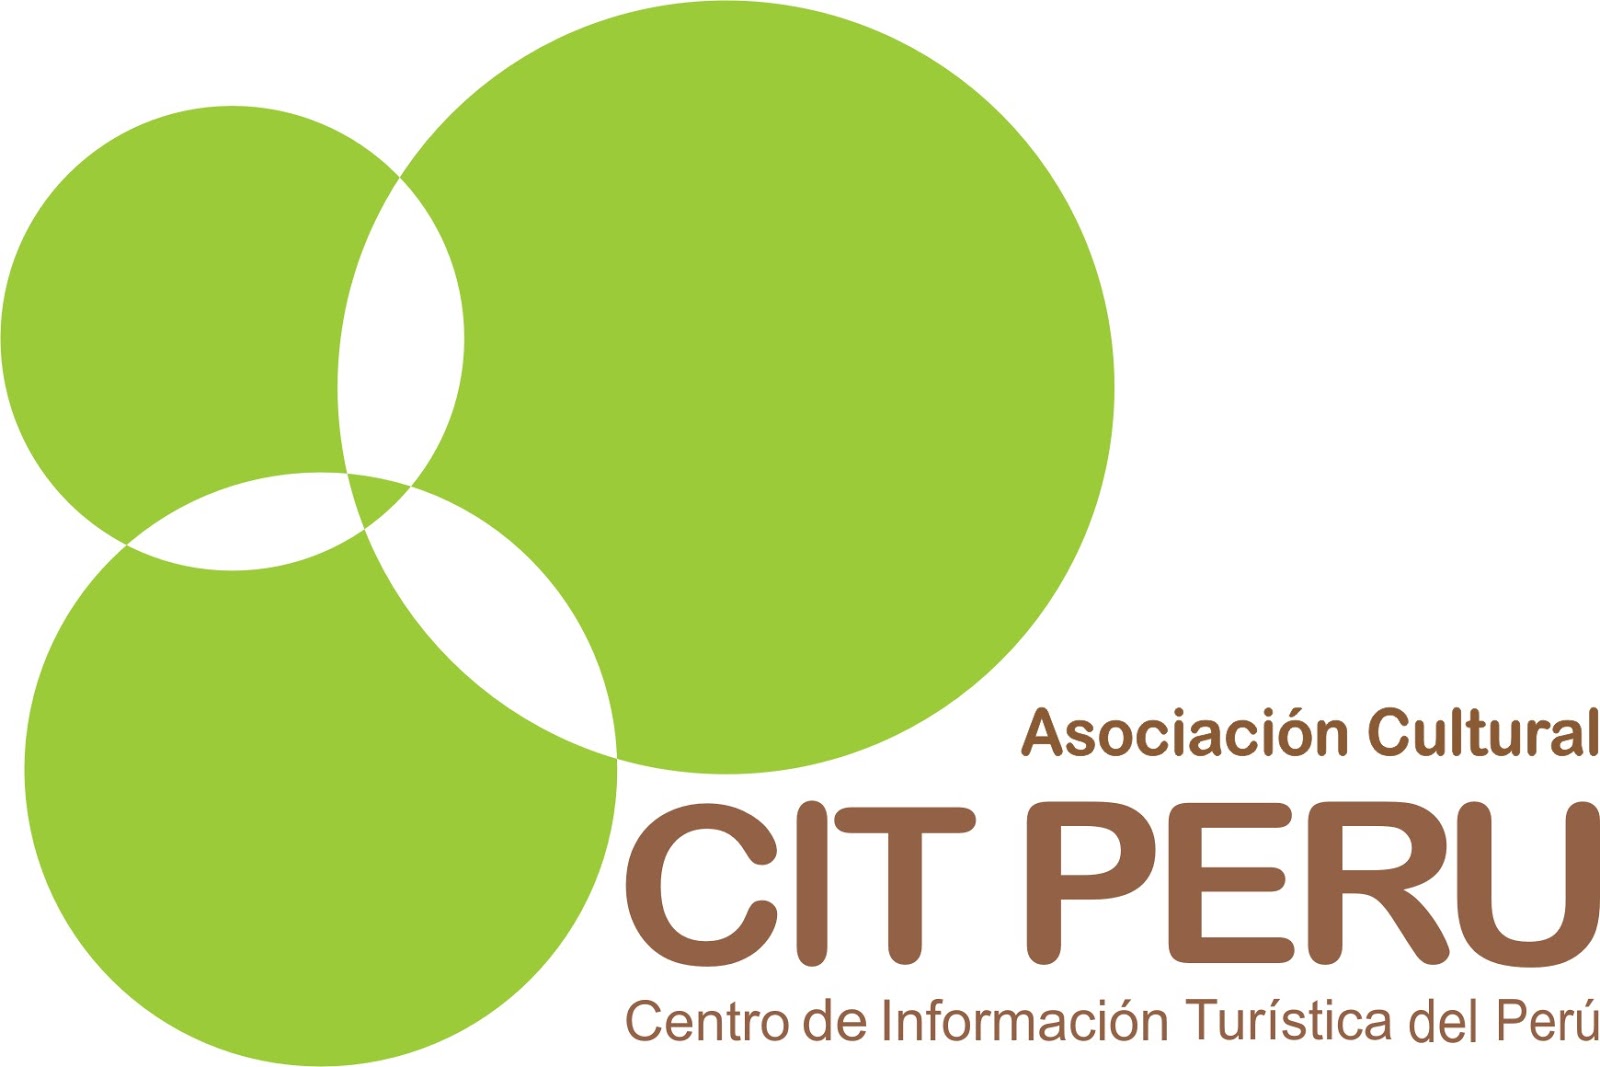 Centro de Información Turística del Perú